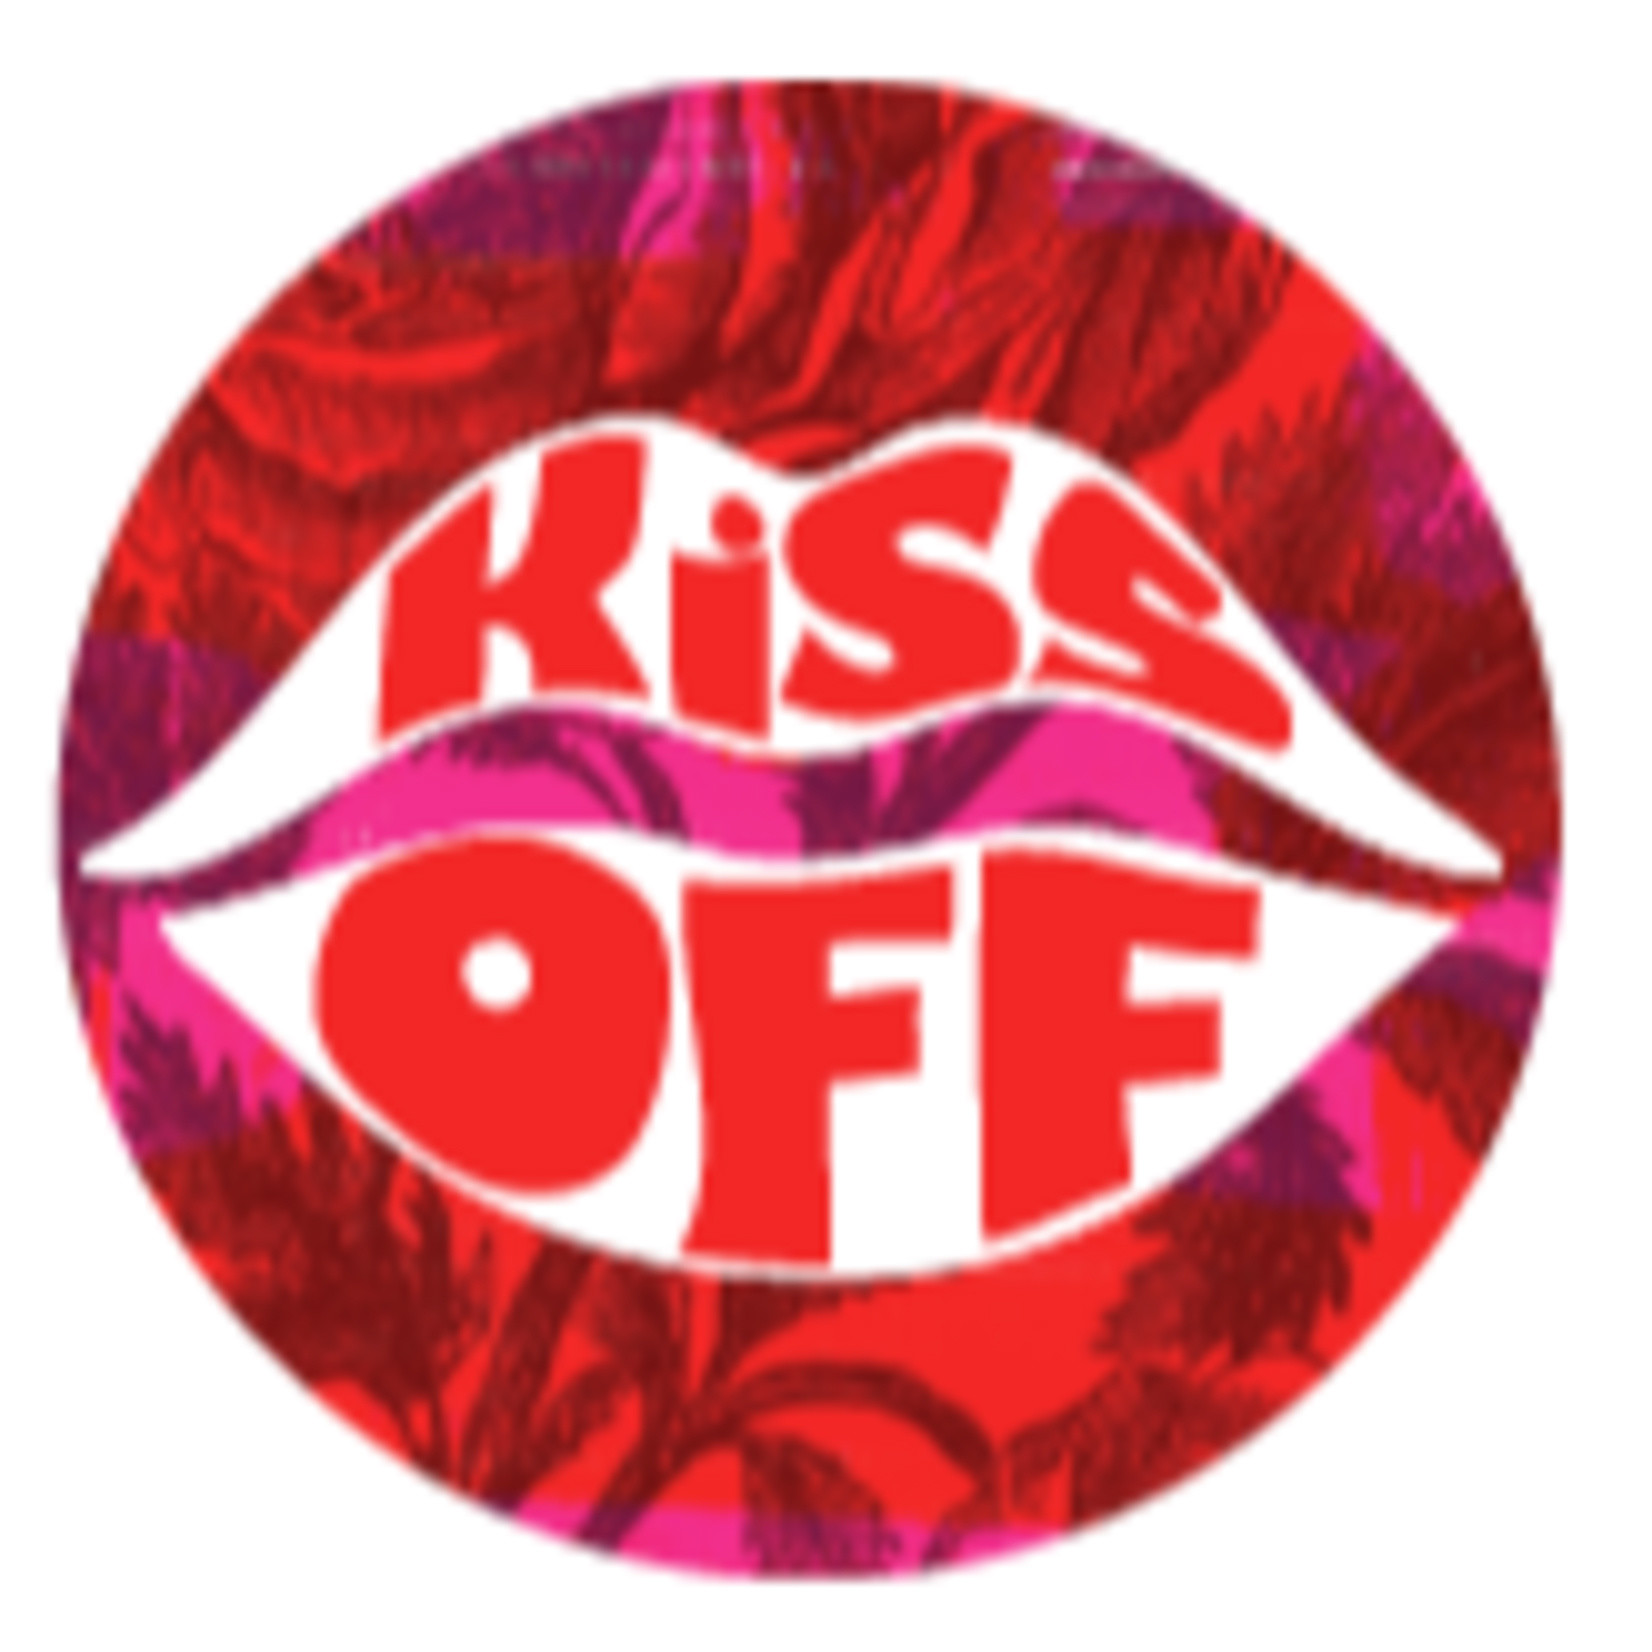 Sticker - Kiss Off